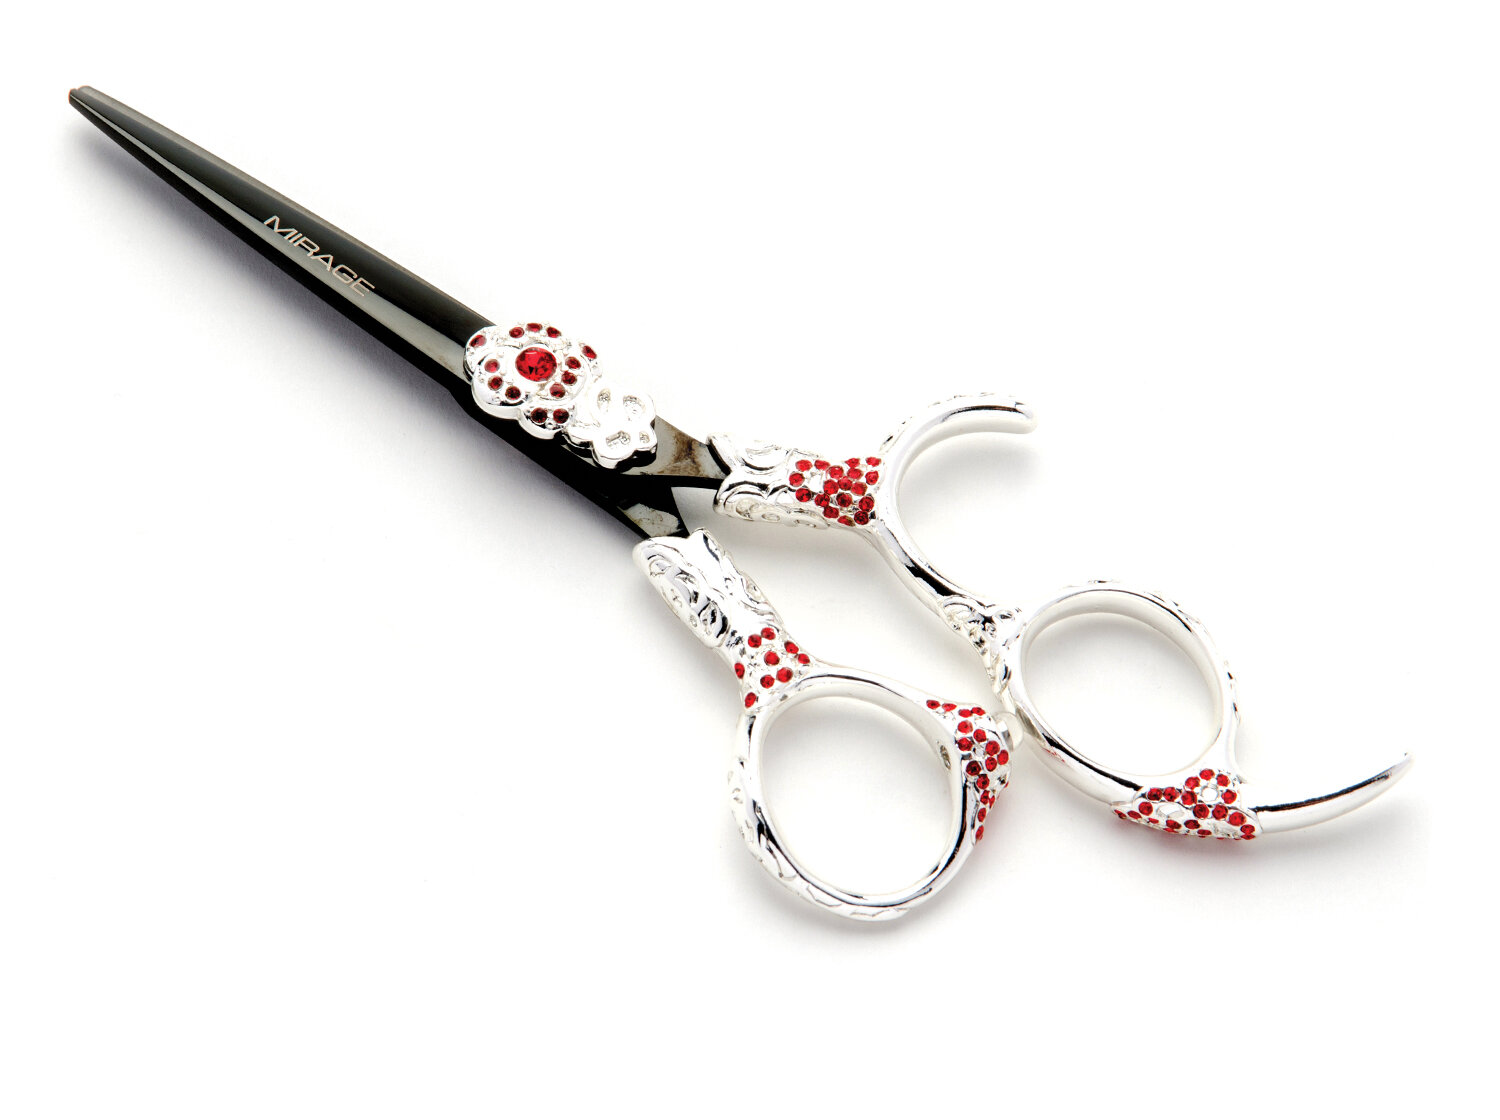 Convex Hairdressing Scissor sharpening 24 hour turn around 